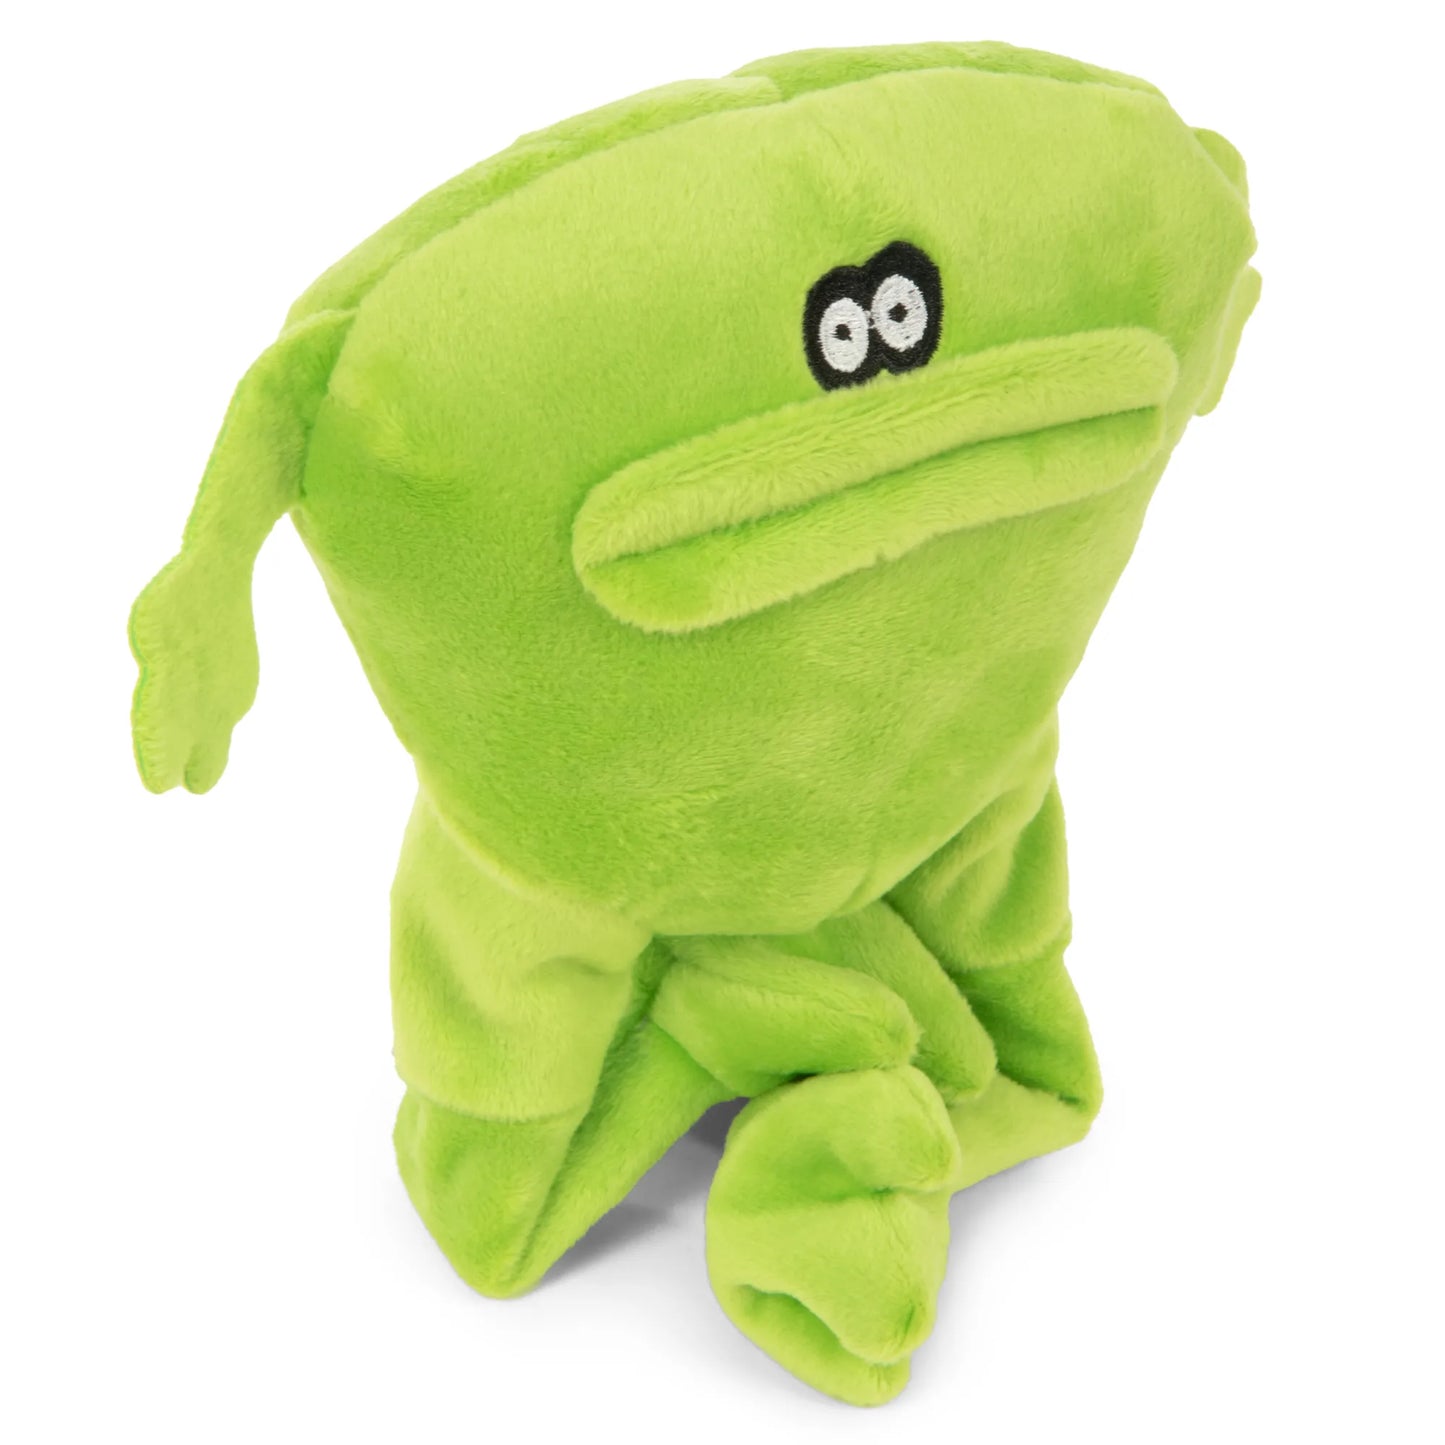 GoDog Action Plush Frog Chew Guard Technology Animated Squeaker Plush Dog Toy, Large